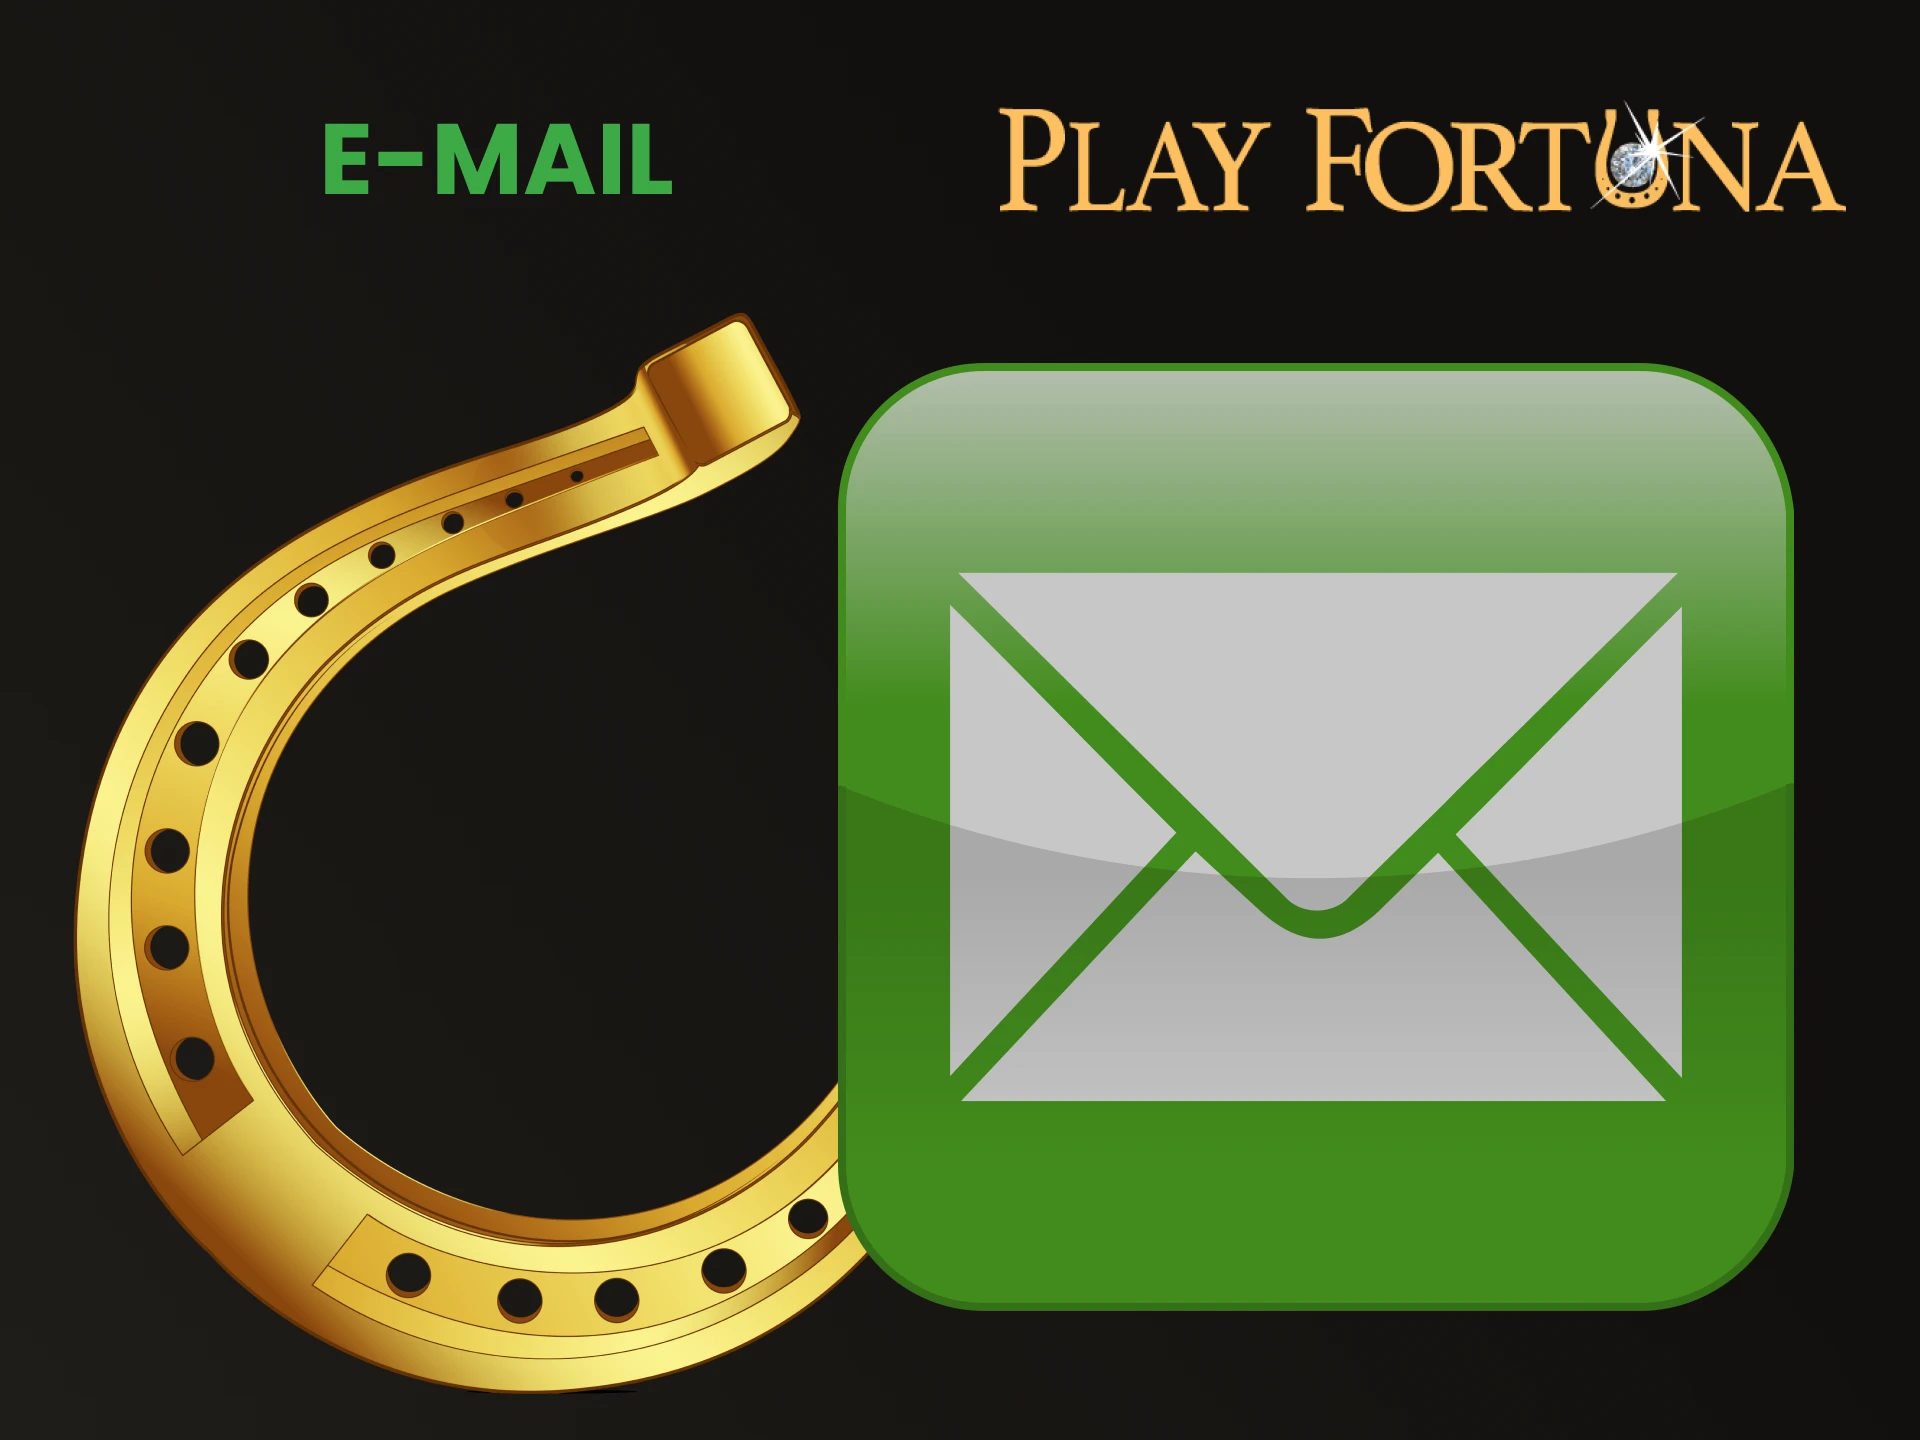 Você pode entrar em contato com a equipe do Play Fortuna via chat email.